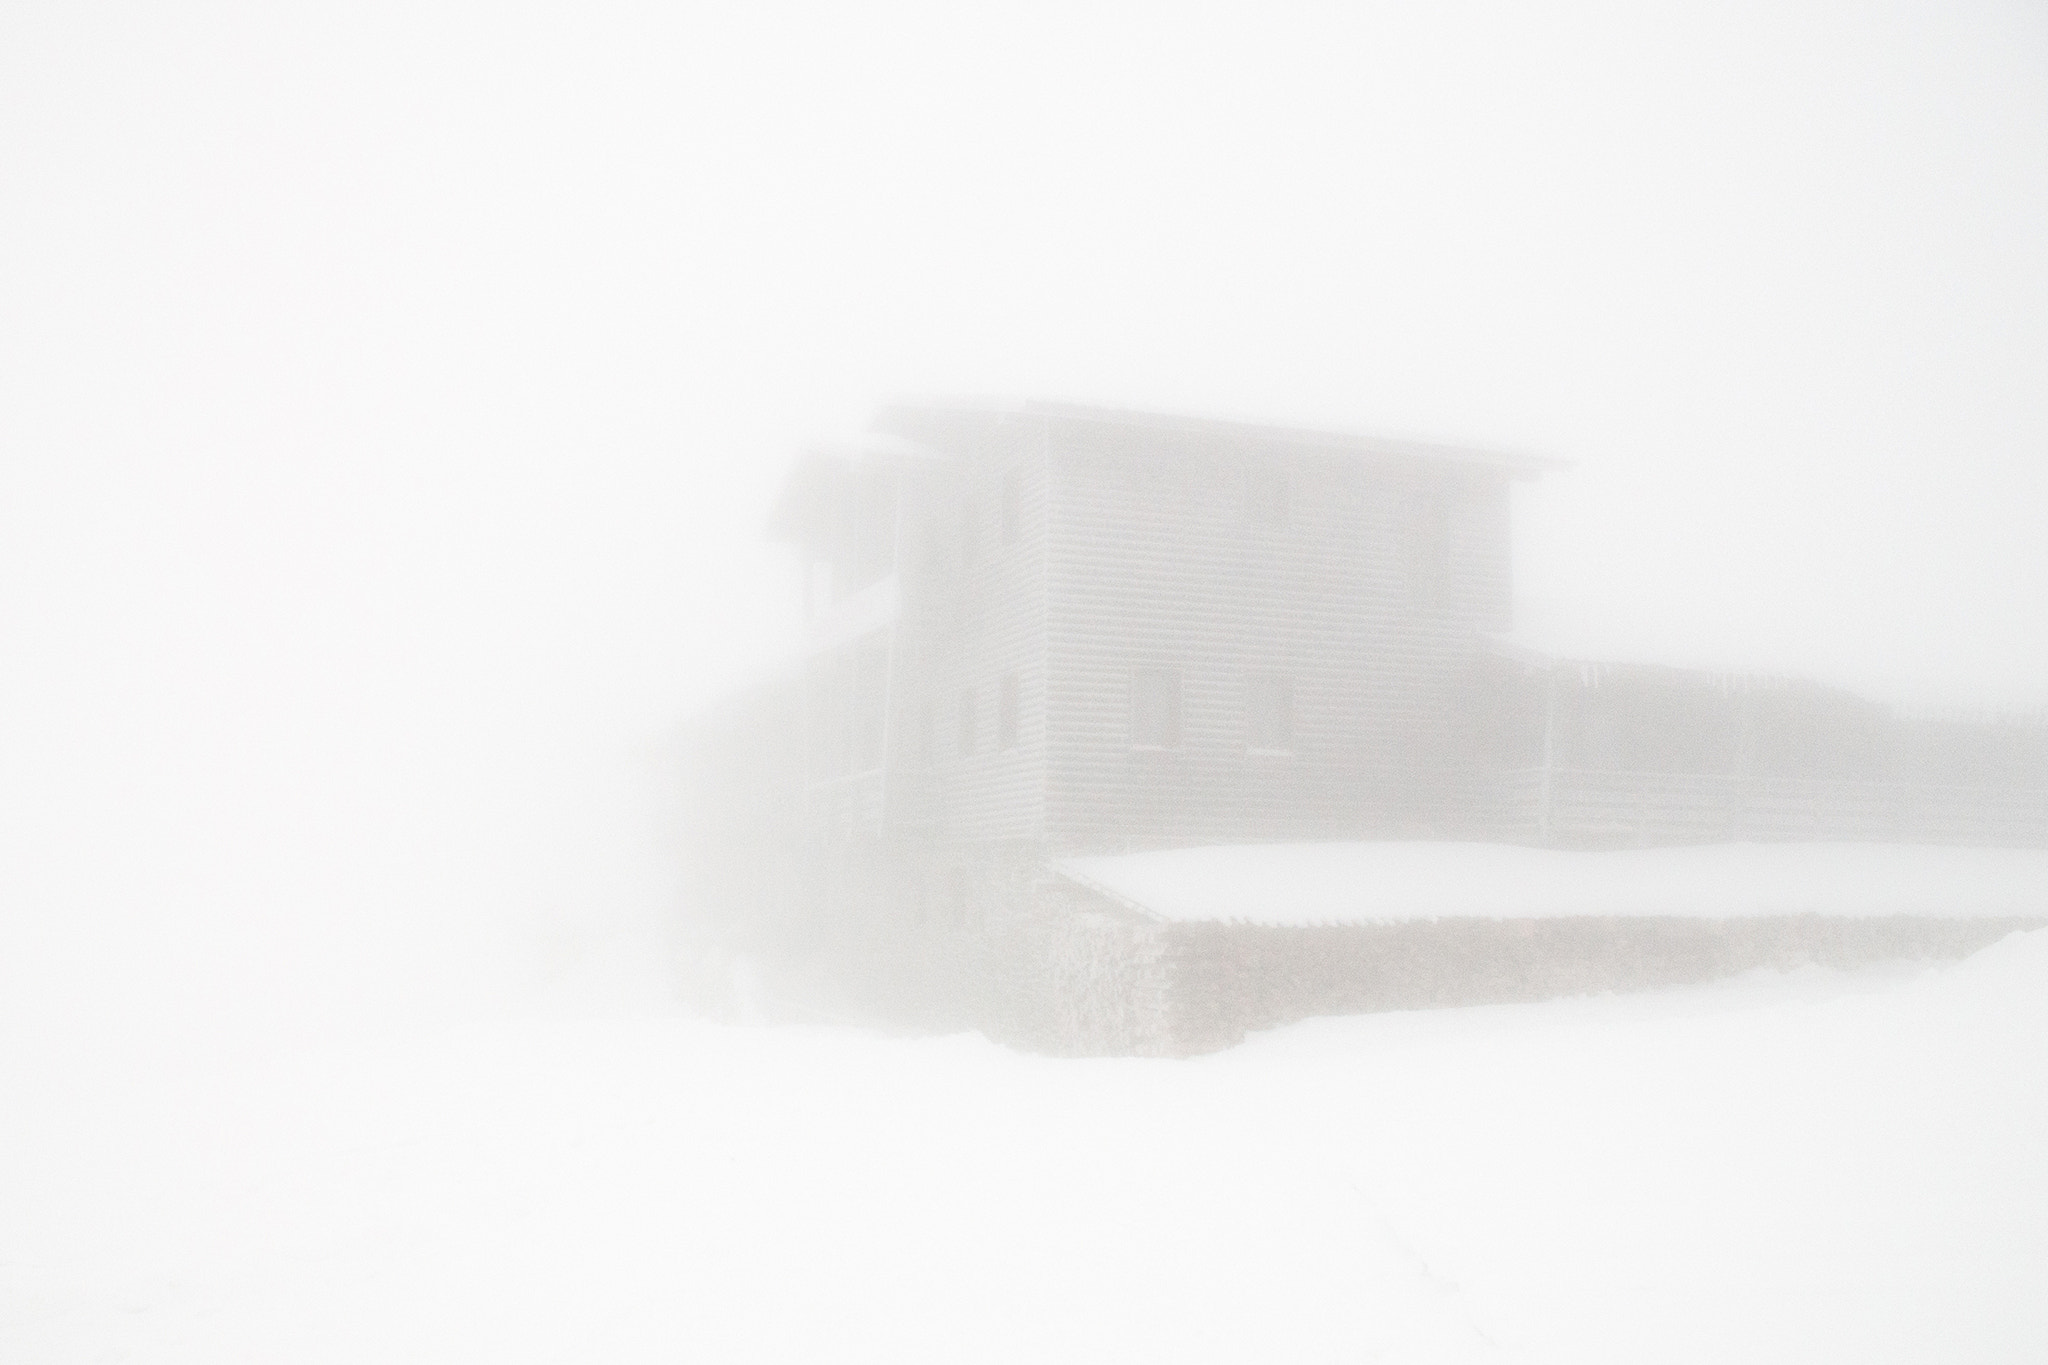 Nikon D300 sample photo. Foggy chalet photography